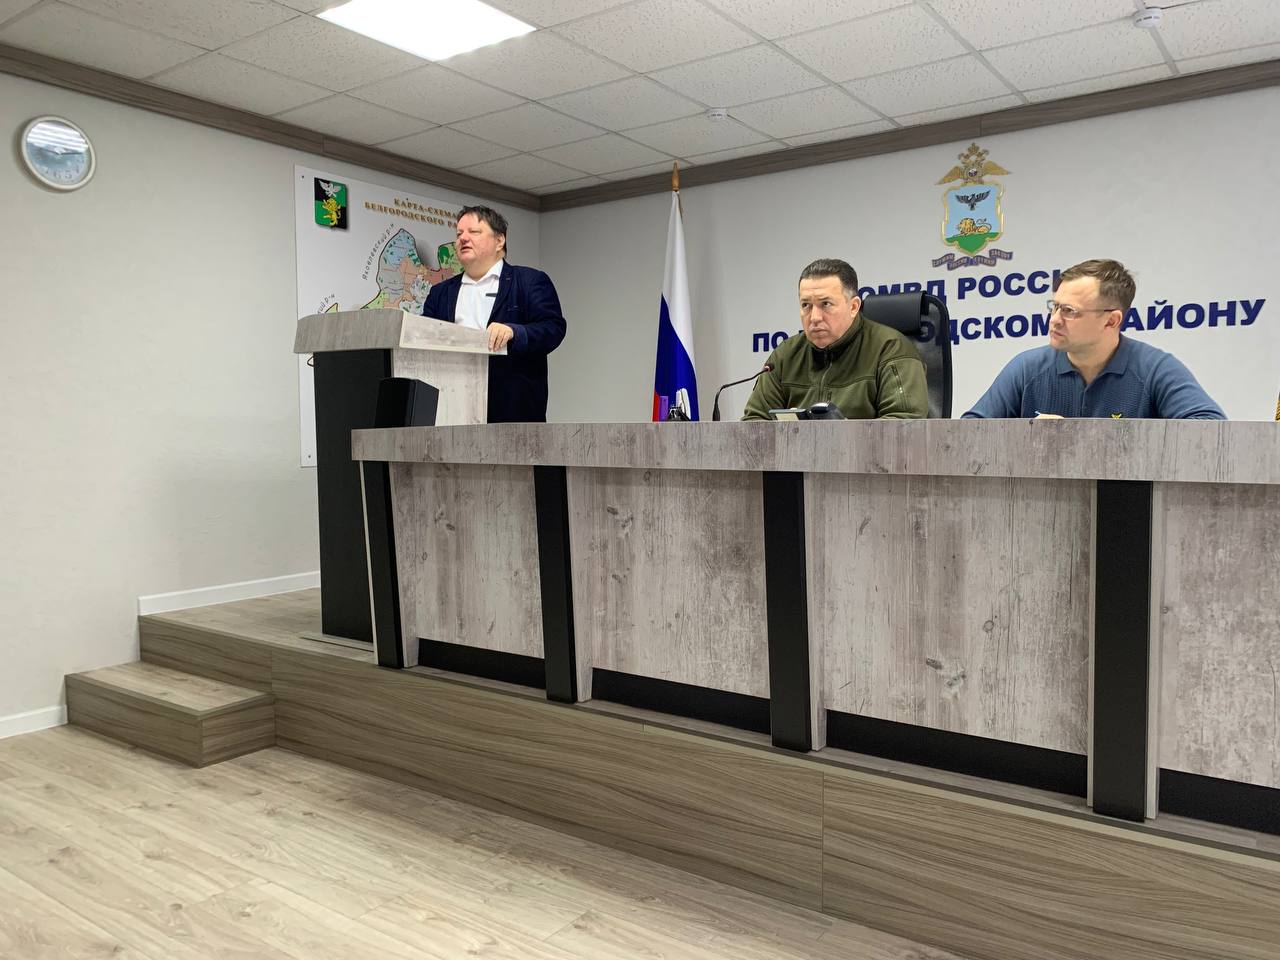 Сотрудники ОМВД России по Белгородскому району провели рабочую встречу с председателем избирательной комиссии муниципалитета.